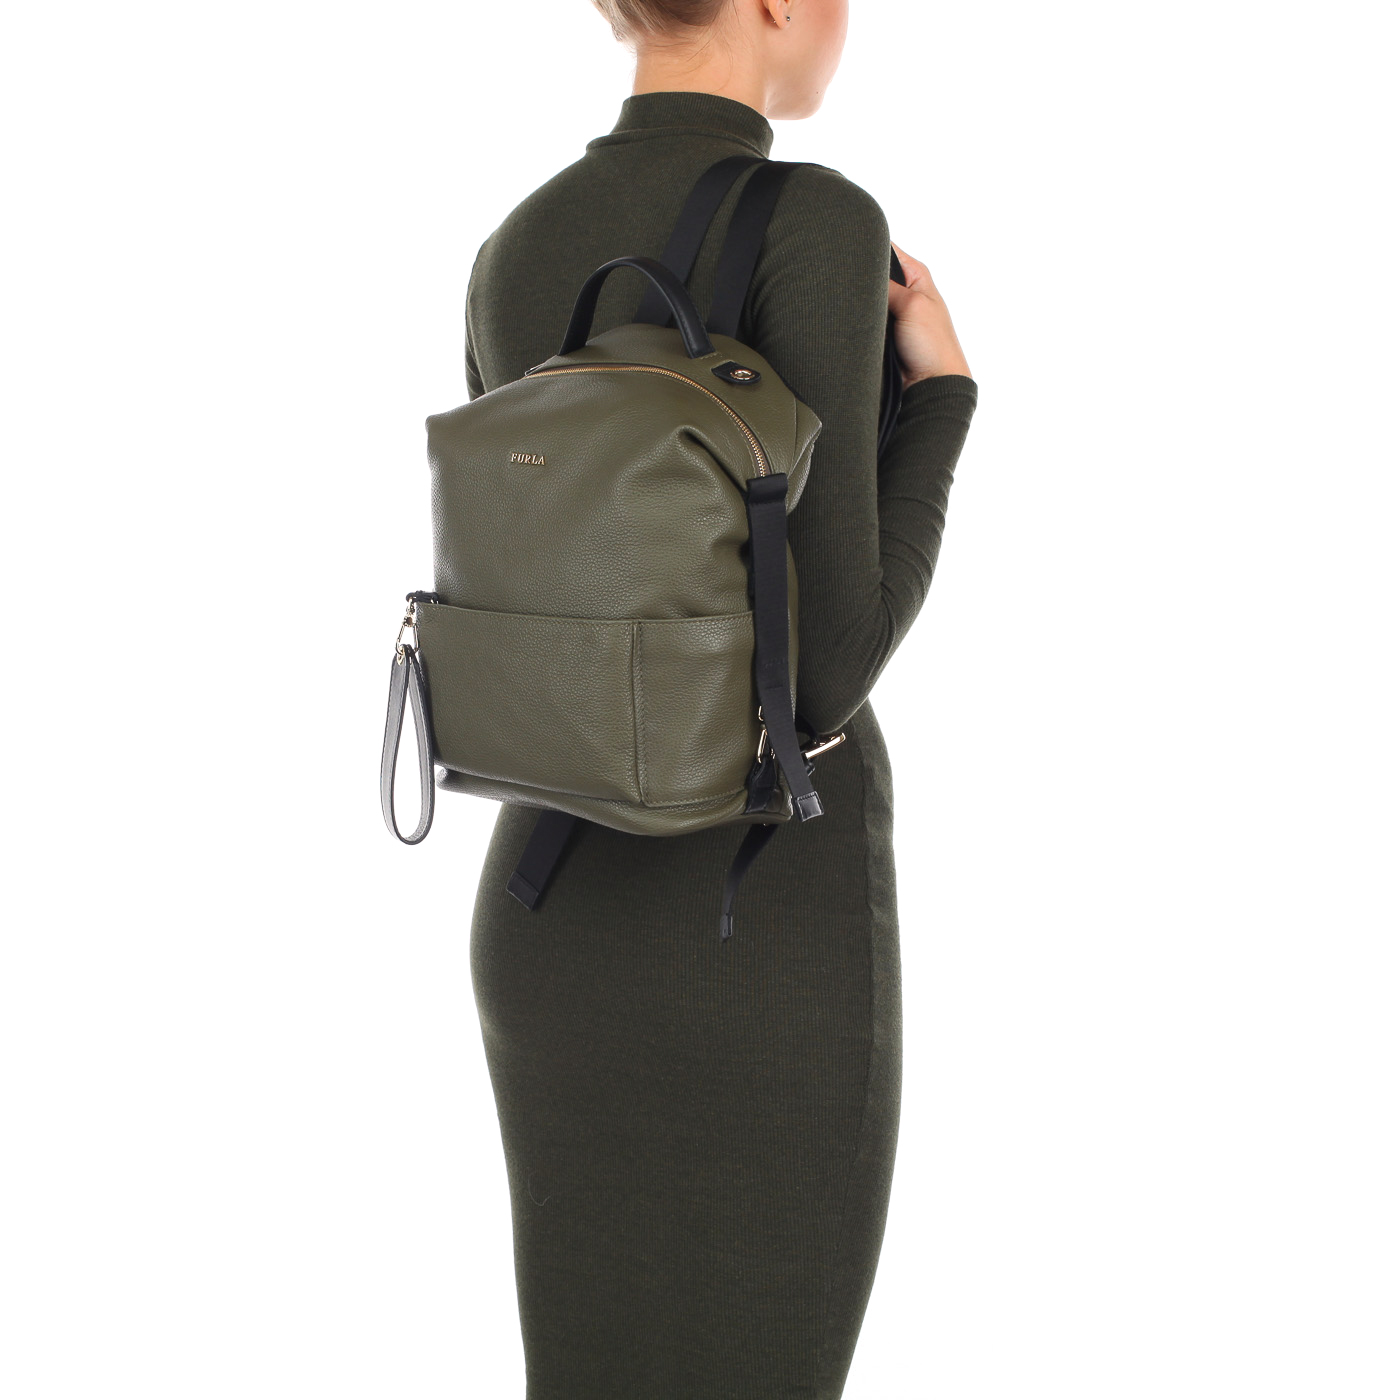 Аккуратный женский рюкзак зеленого цвета Furla Dafne avatar